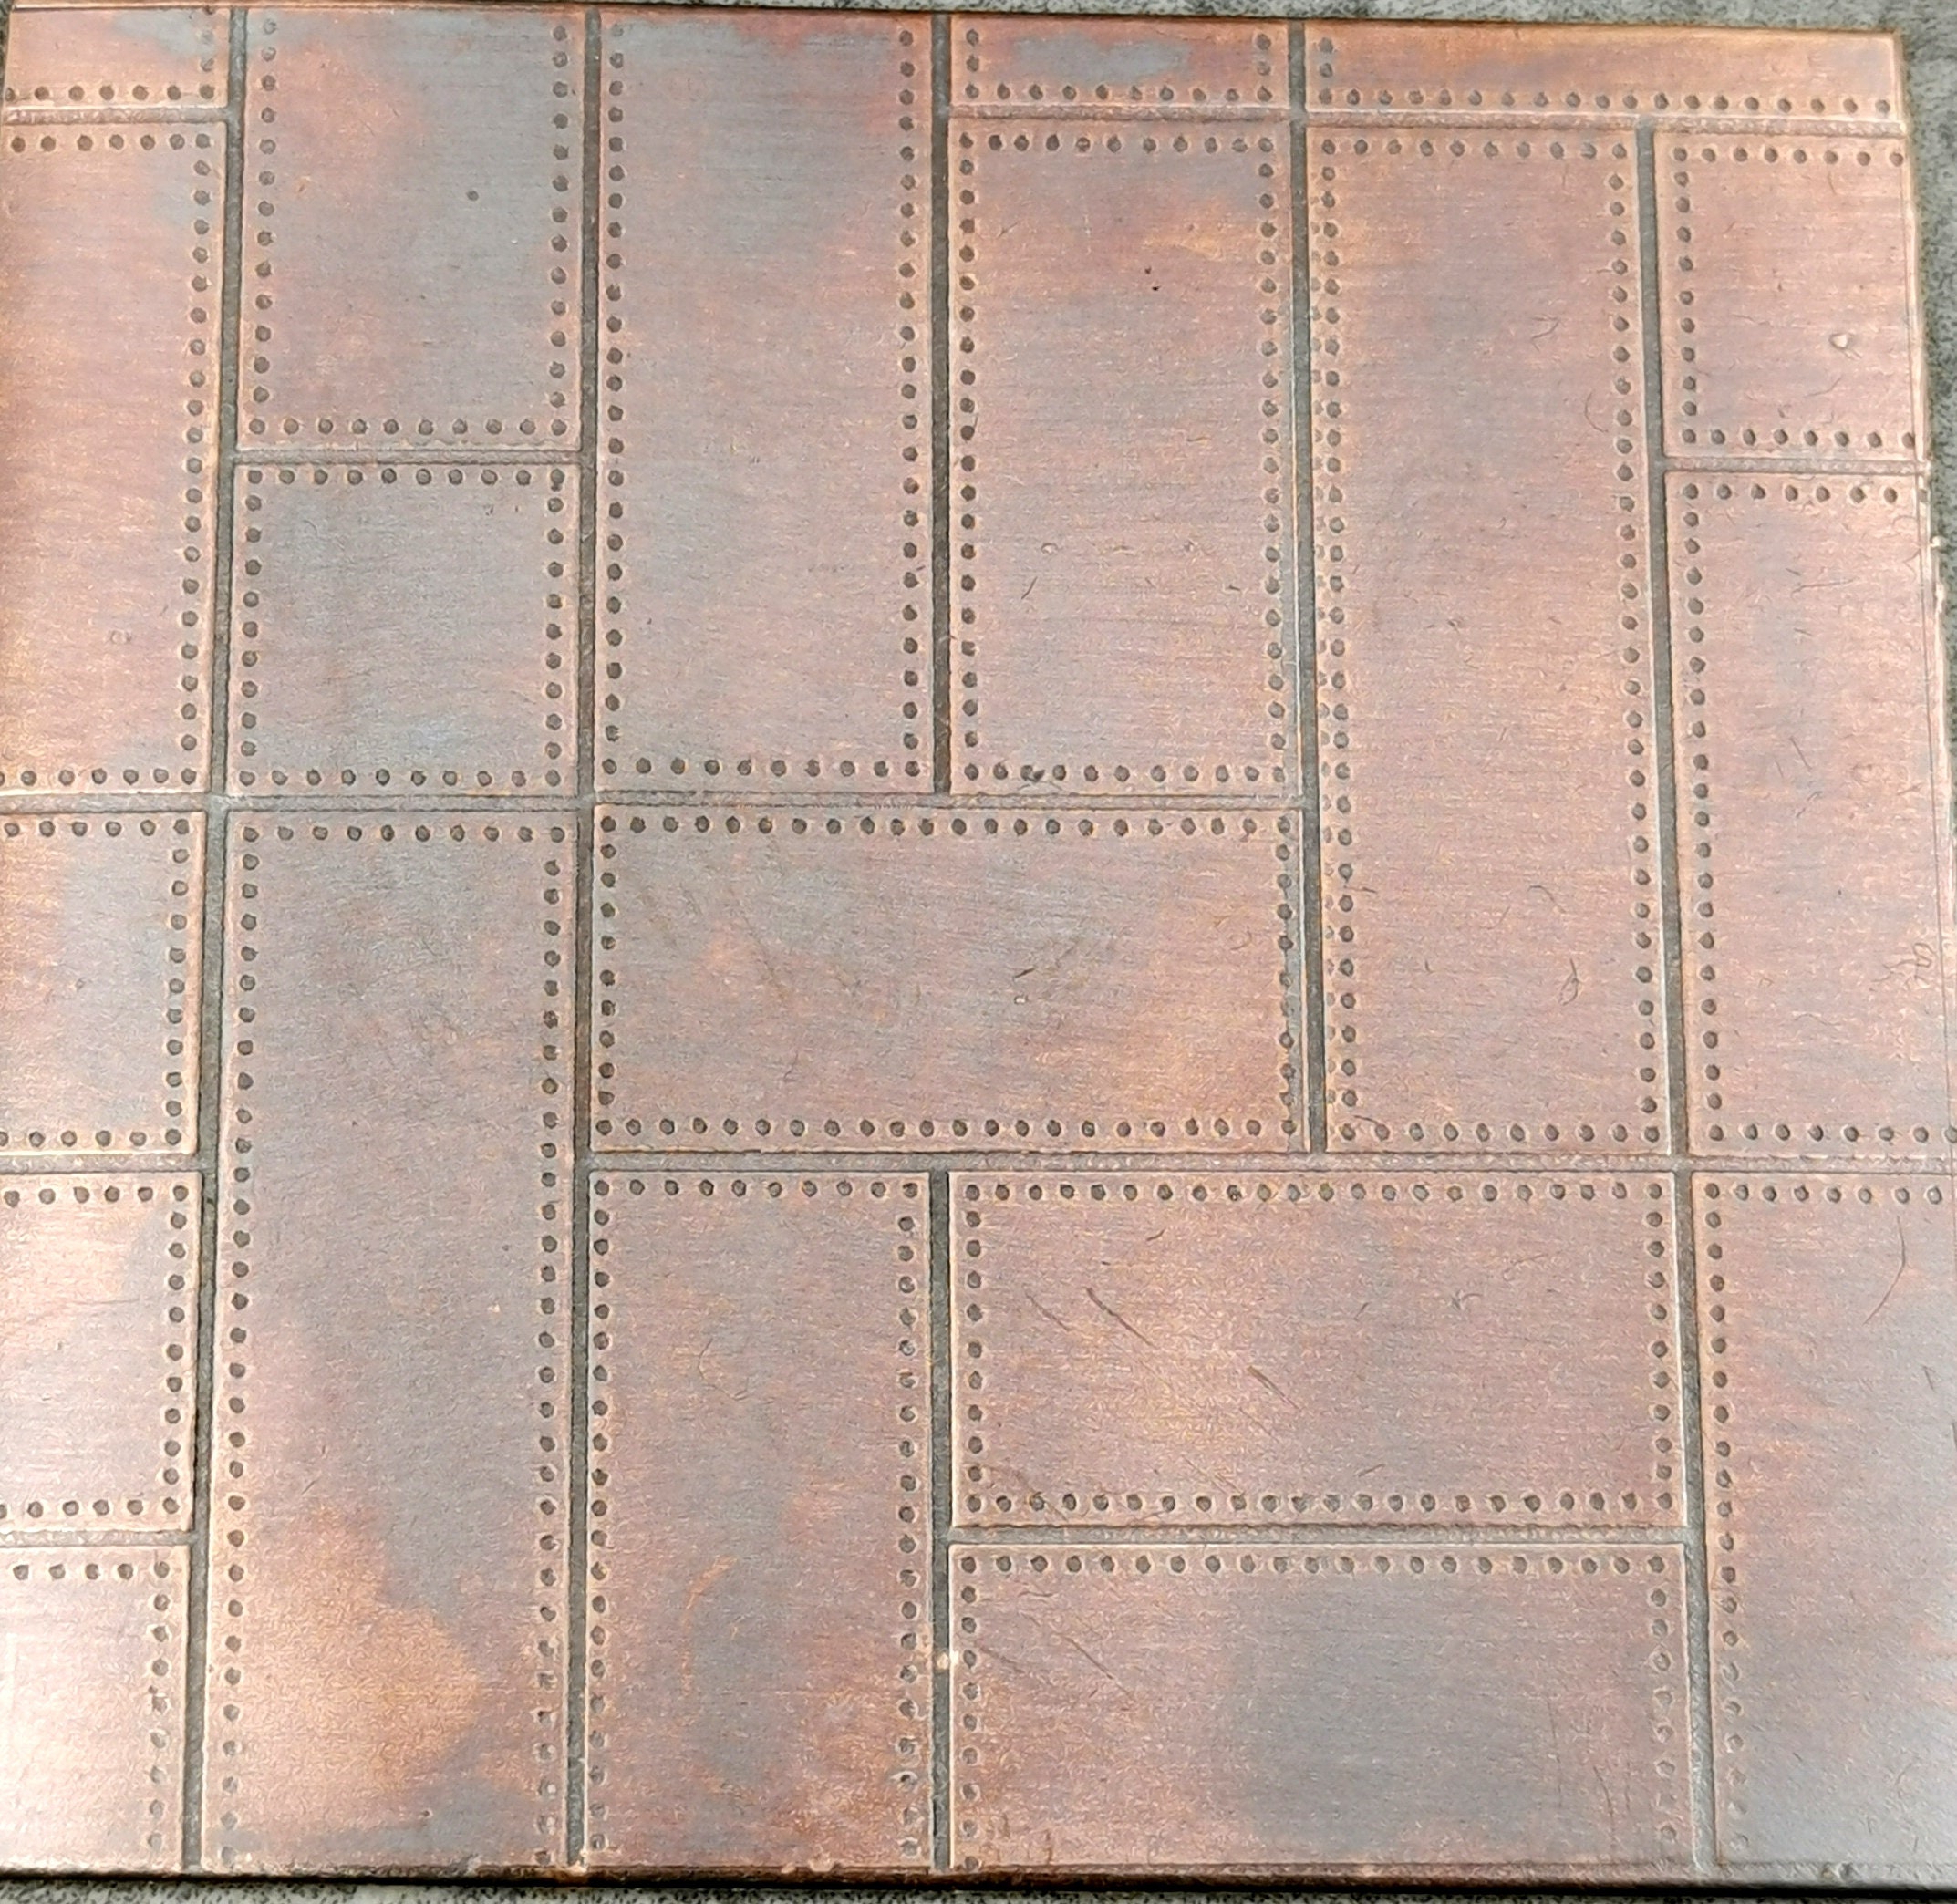 Copper Sheet Patina,rustic Copper Crafting Material,metal Art Supplies,copper  Sheet Art,rustic Copper Tile,copper Backsplash Rustic Decor 